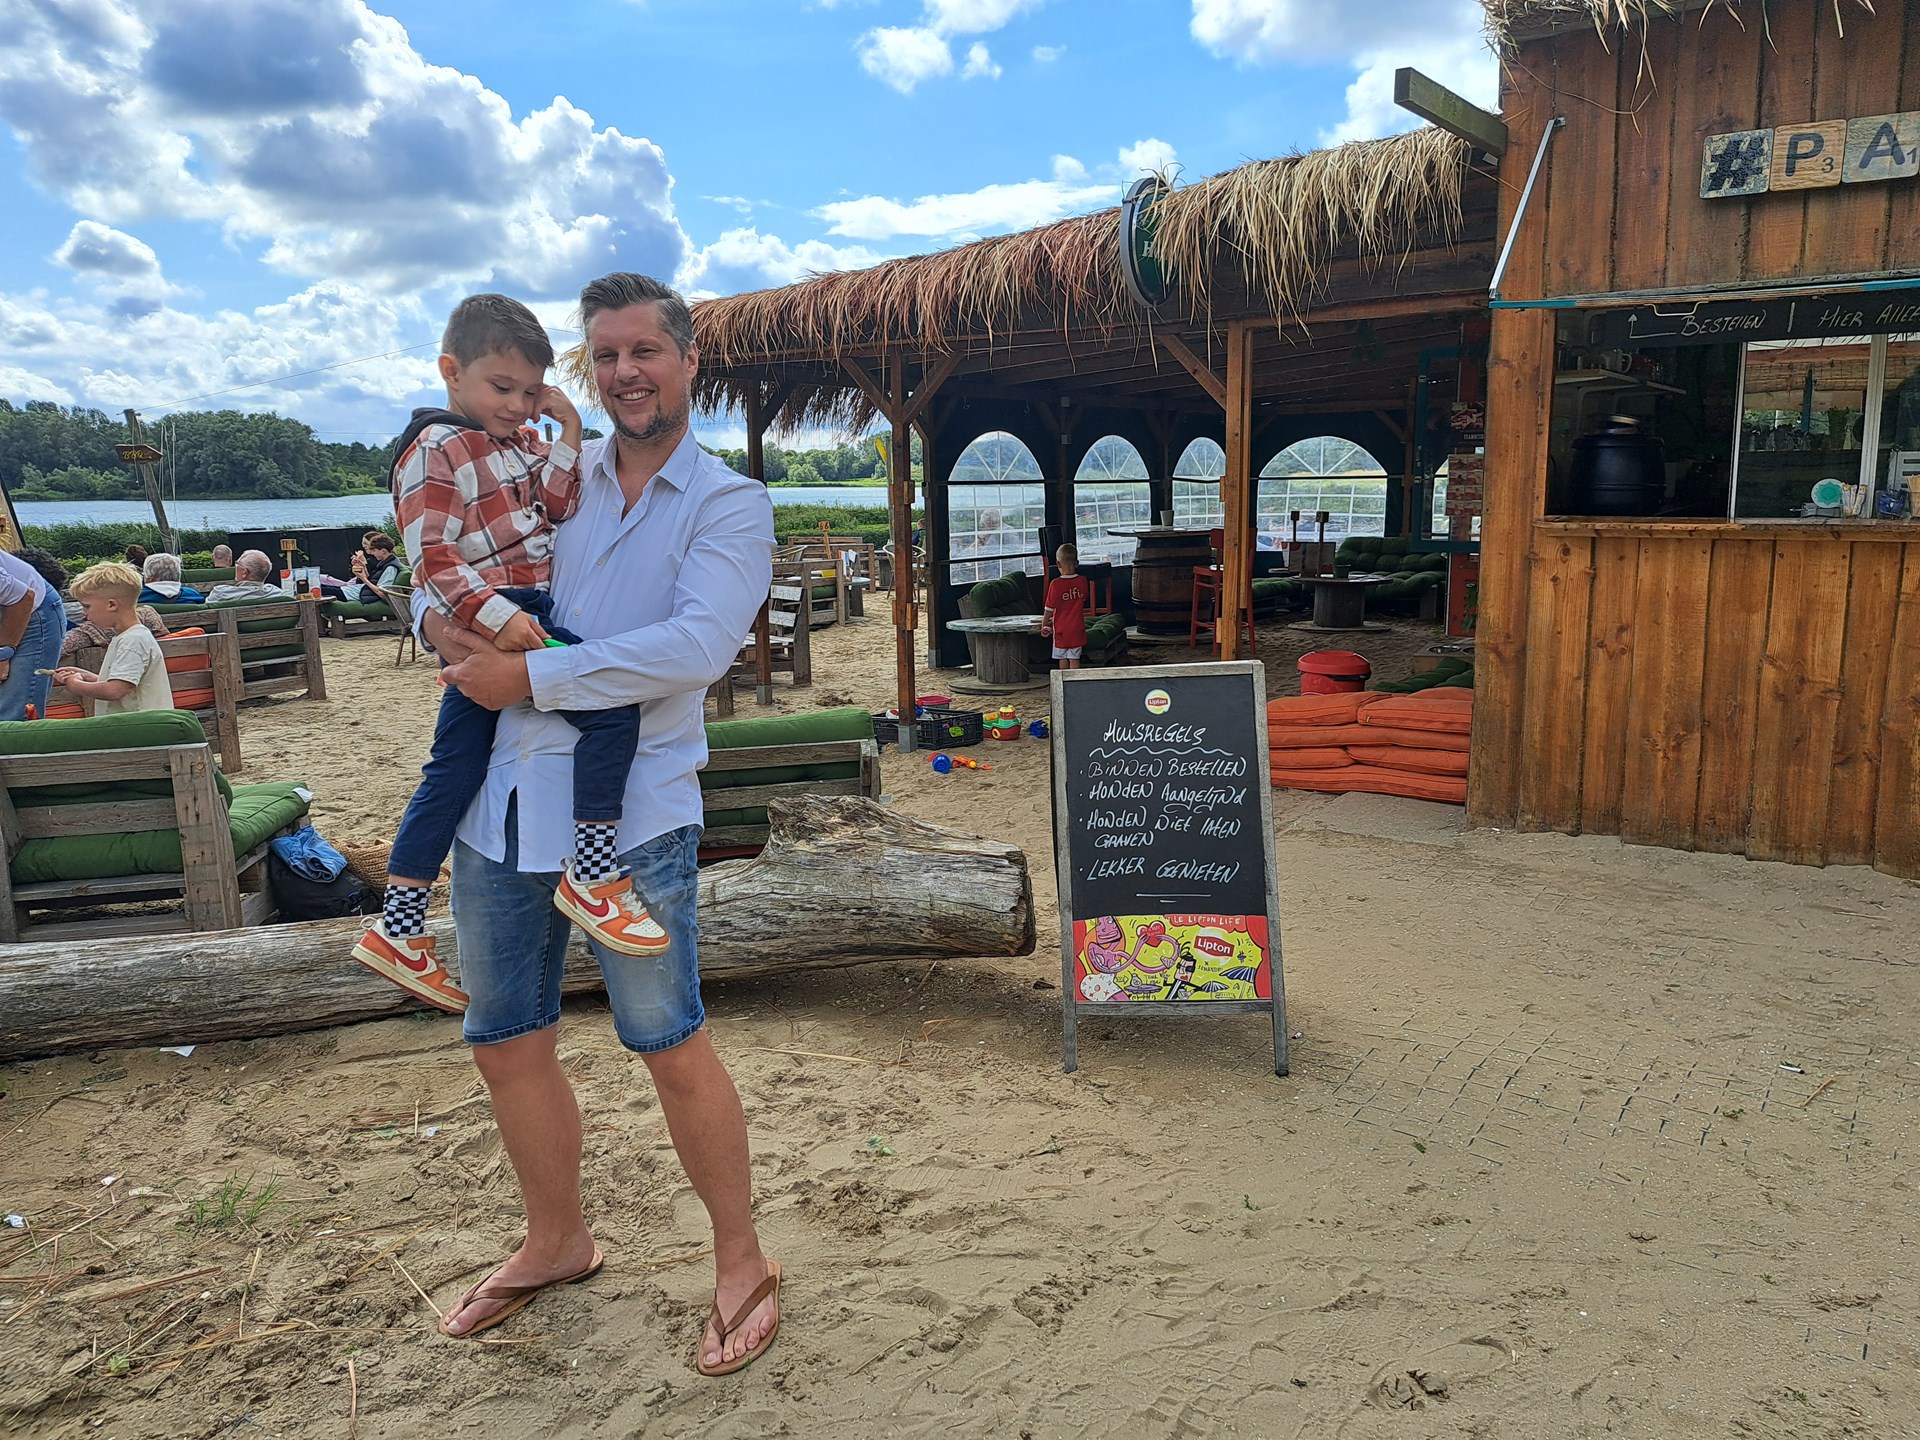 Eigenaar strandpaviljoen met zijn zoon